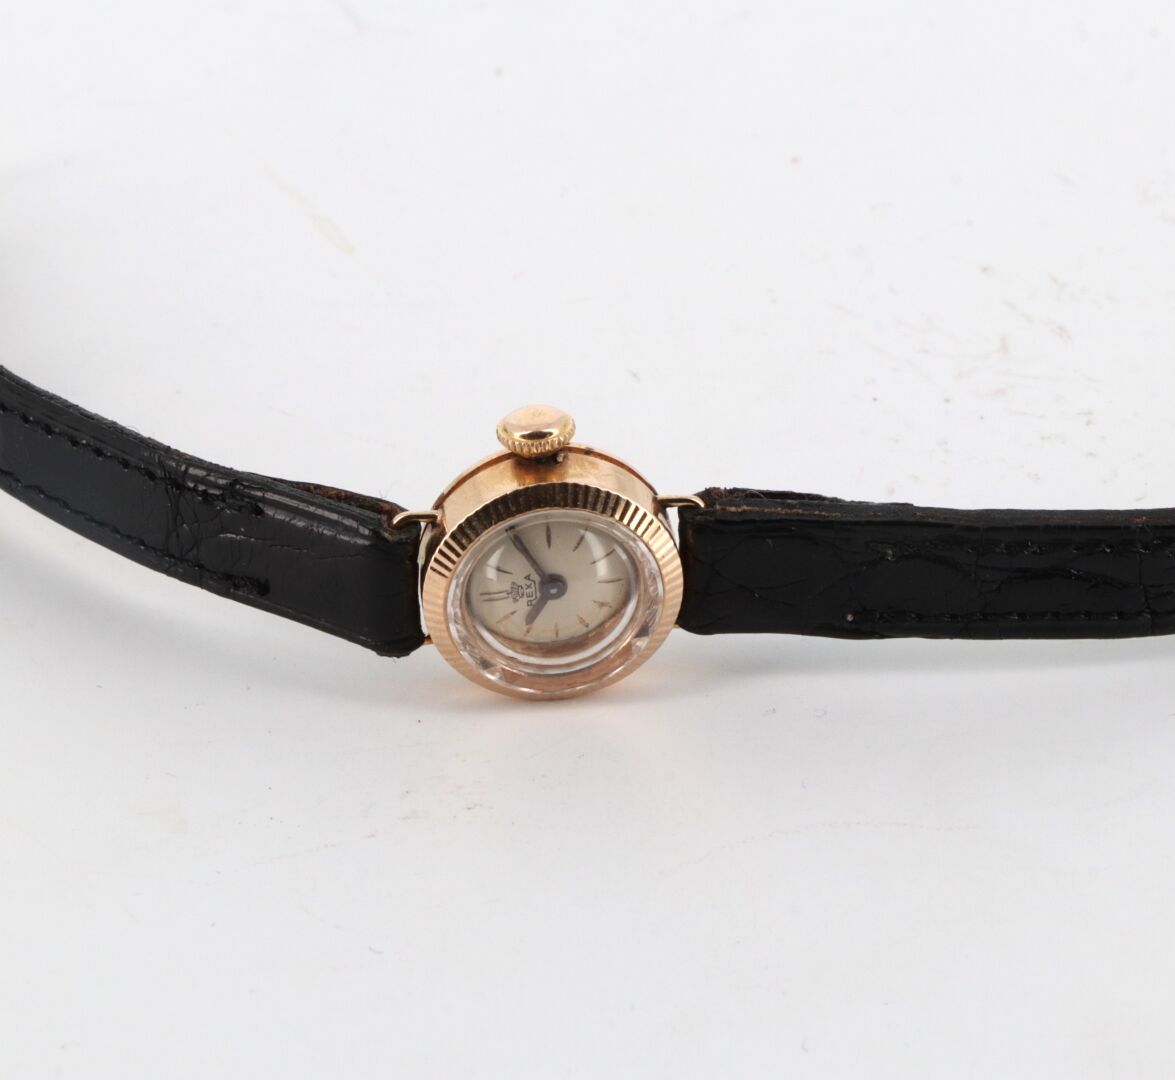 REXA vers 1965 黄金（750）女士腕表，小圆形表壳，带凹槽表圈，旋入式表冠和夹式表背。

灰色表盘，金质刻度，金线指针。

机械机芯，手动上链。
&hellip;